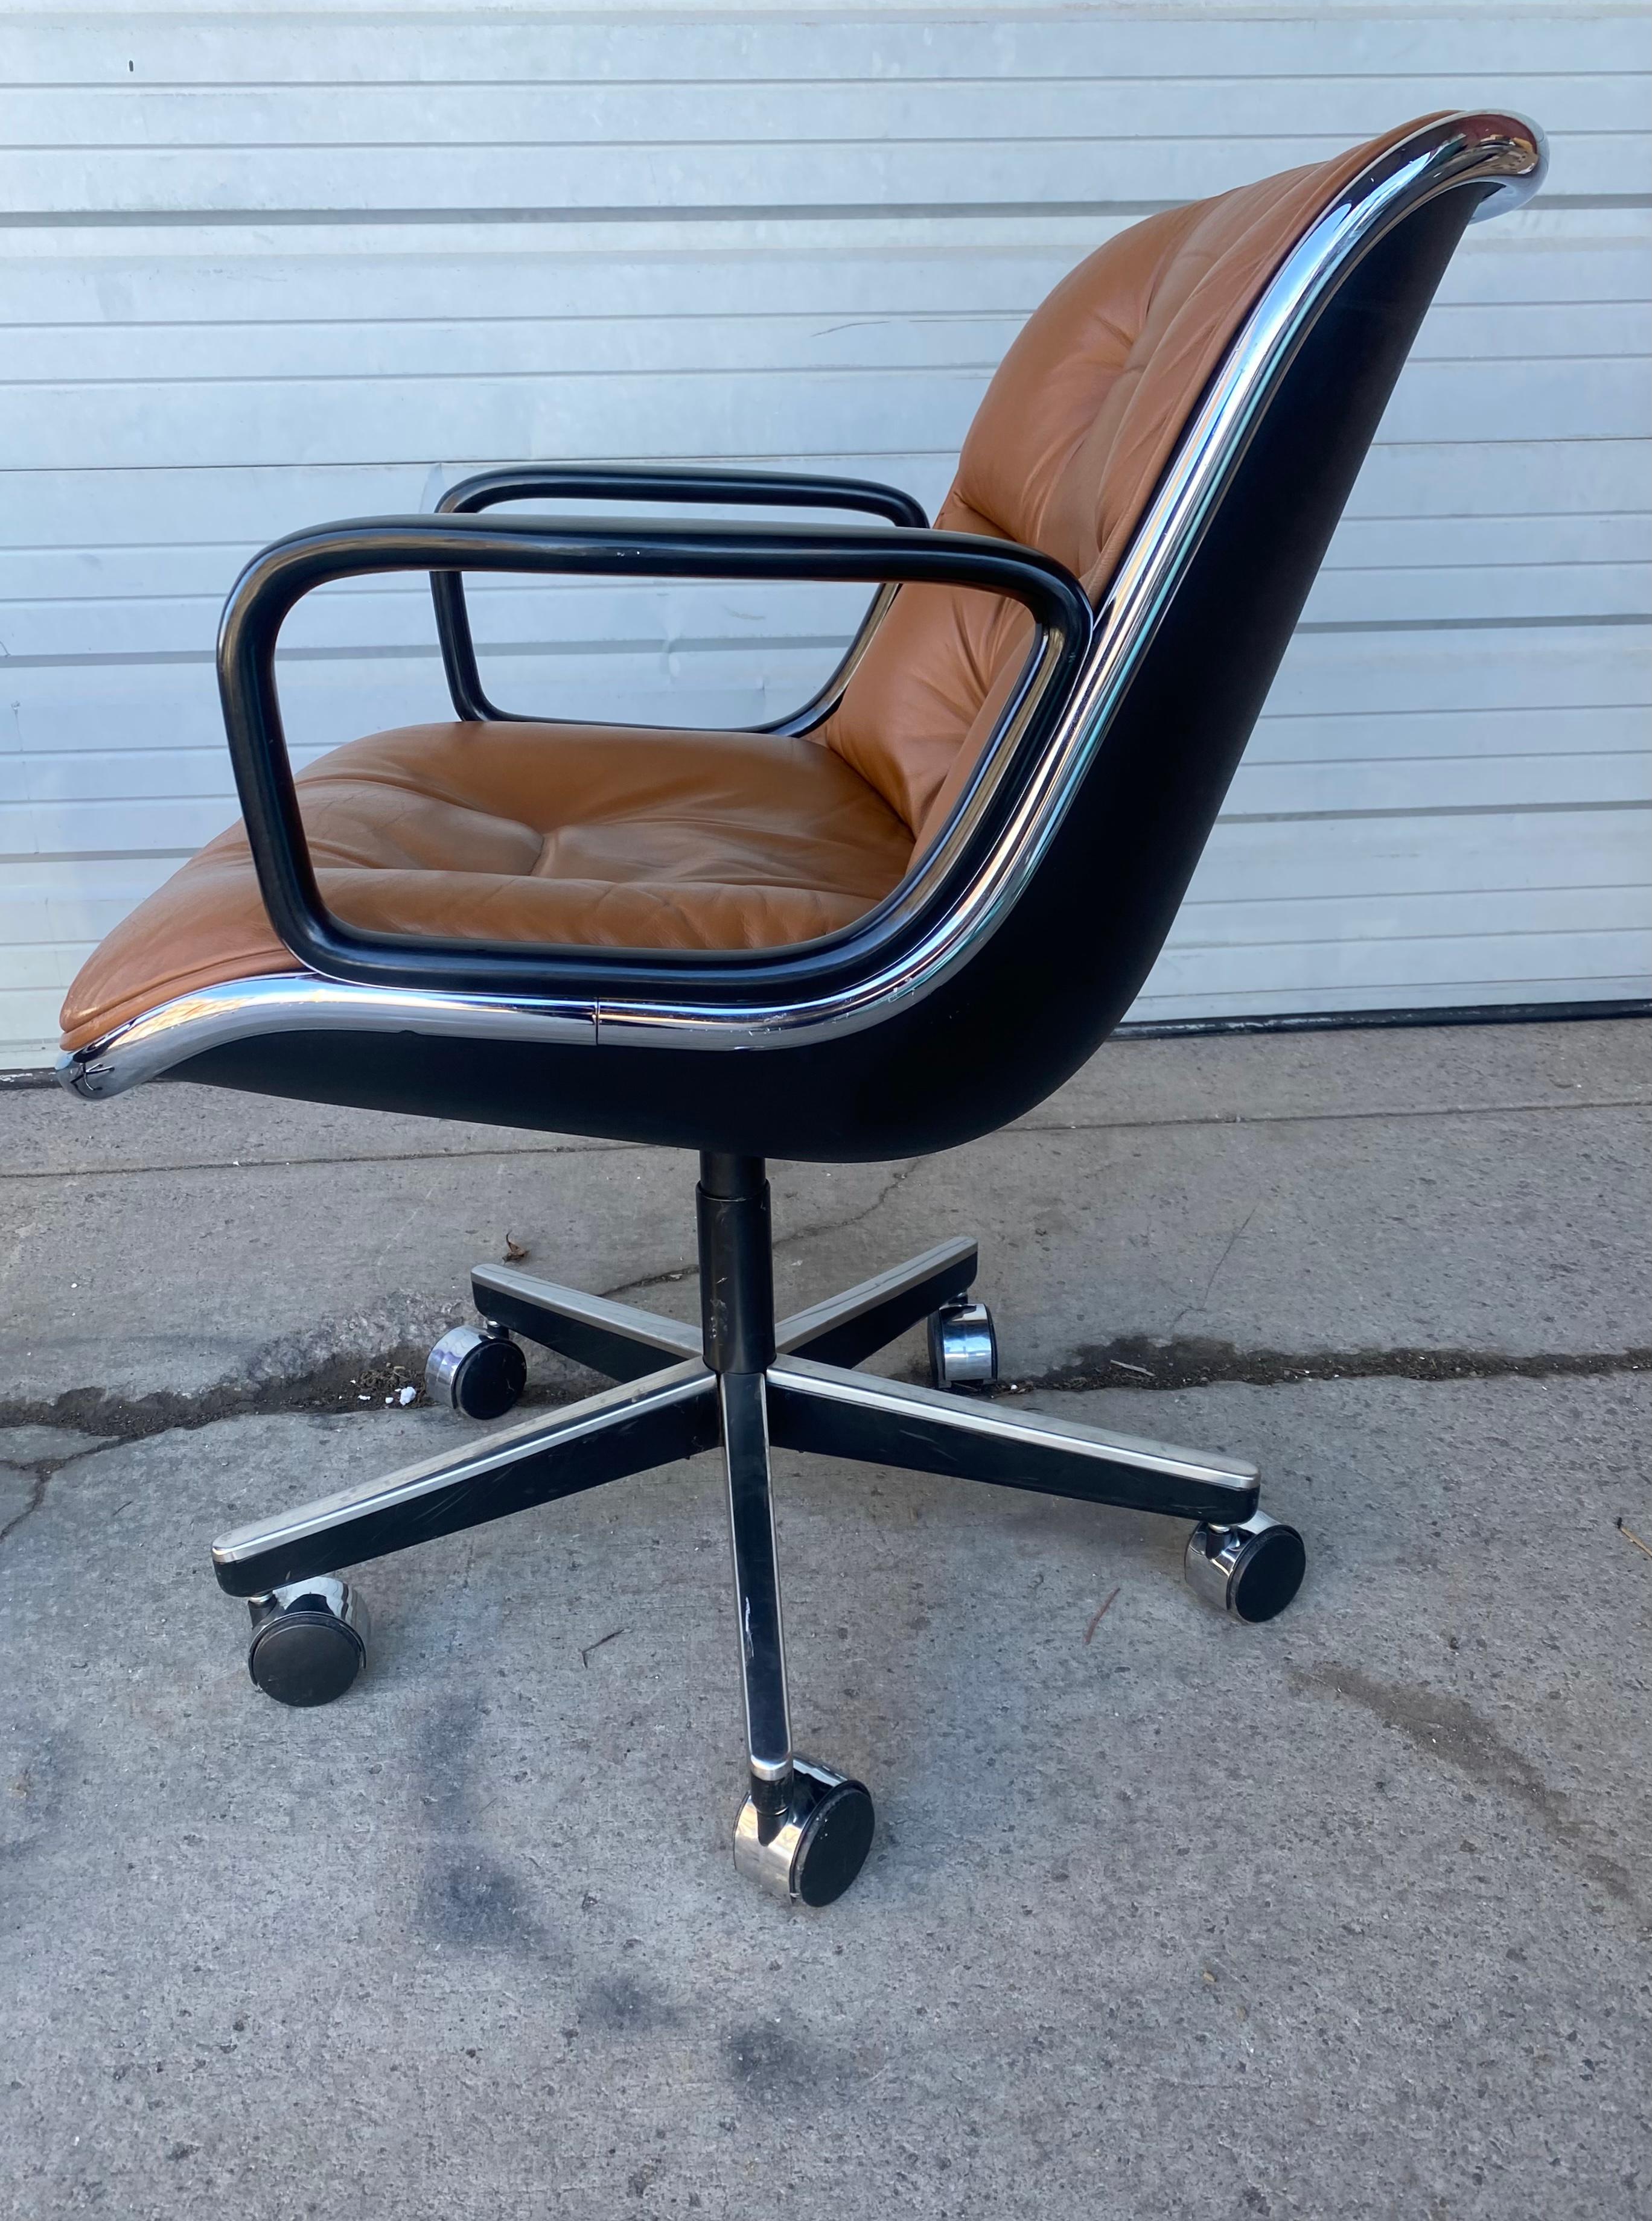 PIRE classique de chaises de bureau Pollock en cuir marron d'origine, conçues par Charles Pollack pour Knoll. Vendu séparément ! Cuir marron d'origine en très bon état,, Inclinable / pivotant,, Base 5 étoiles sur roulettes. Livraison en main propre